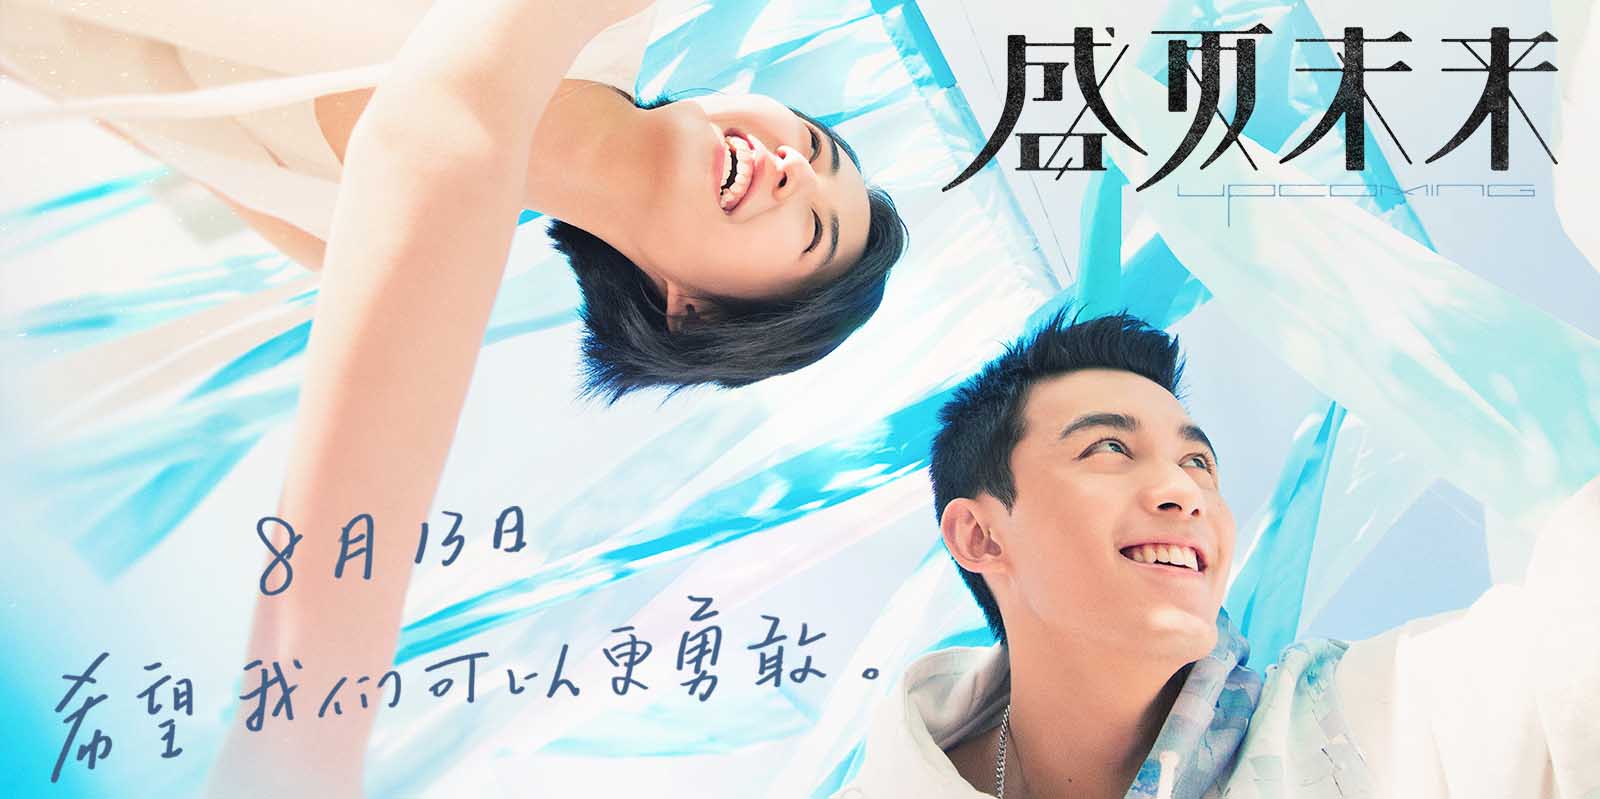 电影《盛夏未来》新海报张子枫吴磊元气满满 8.13七夕档上映